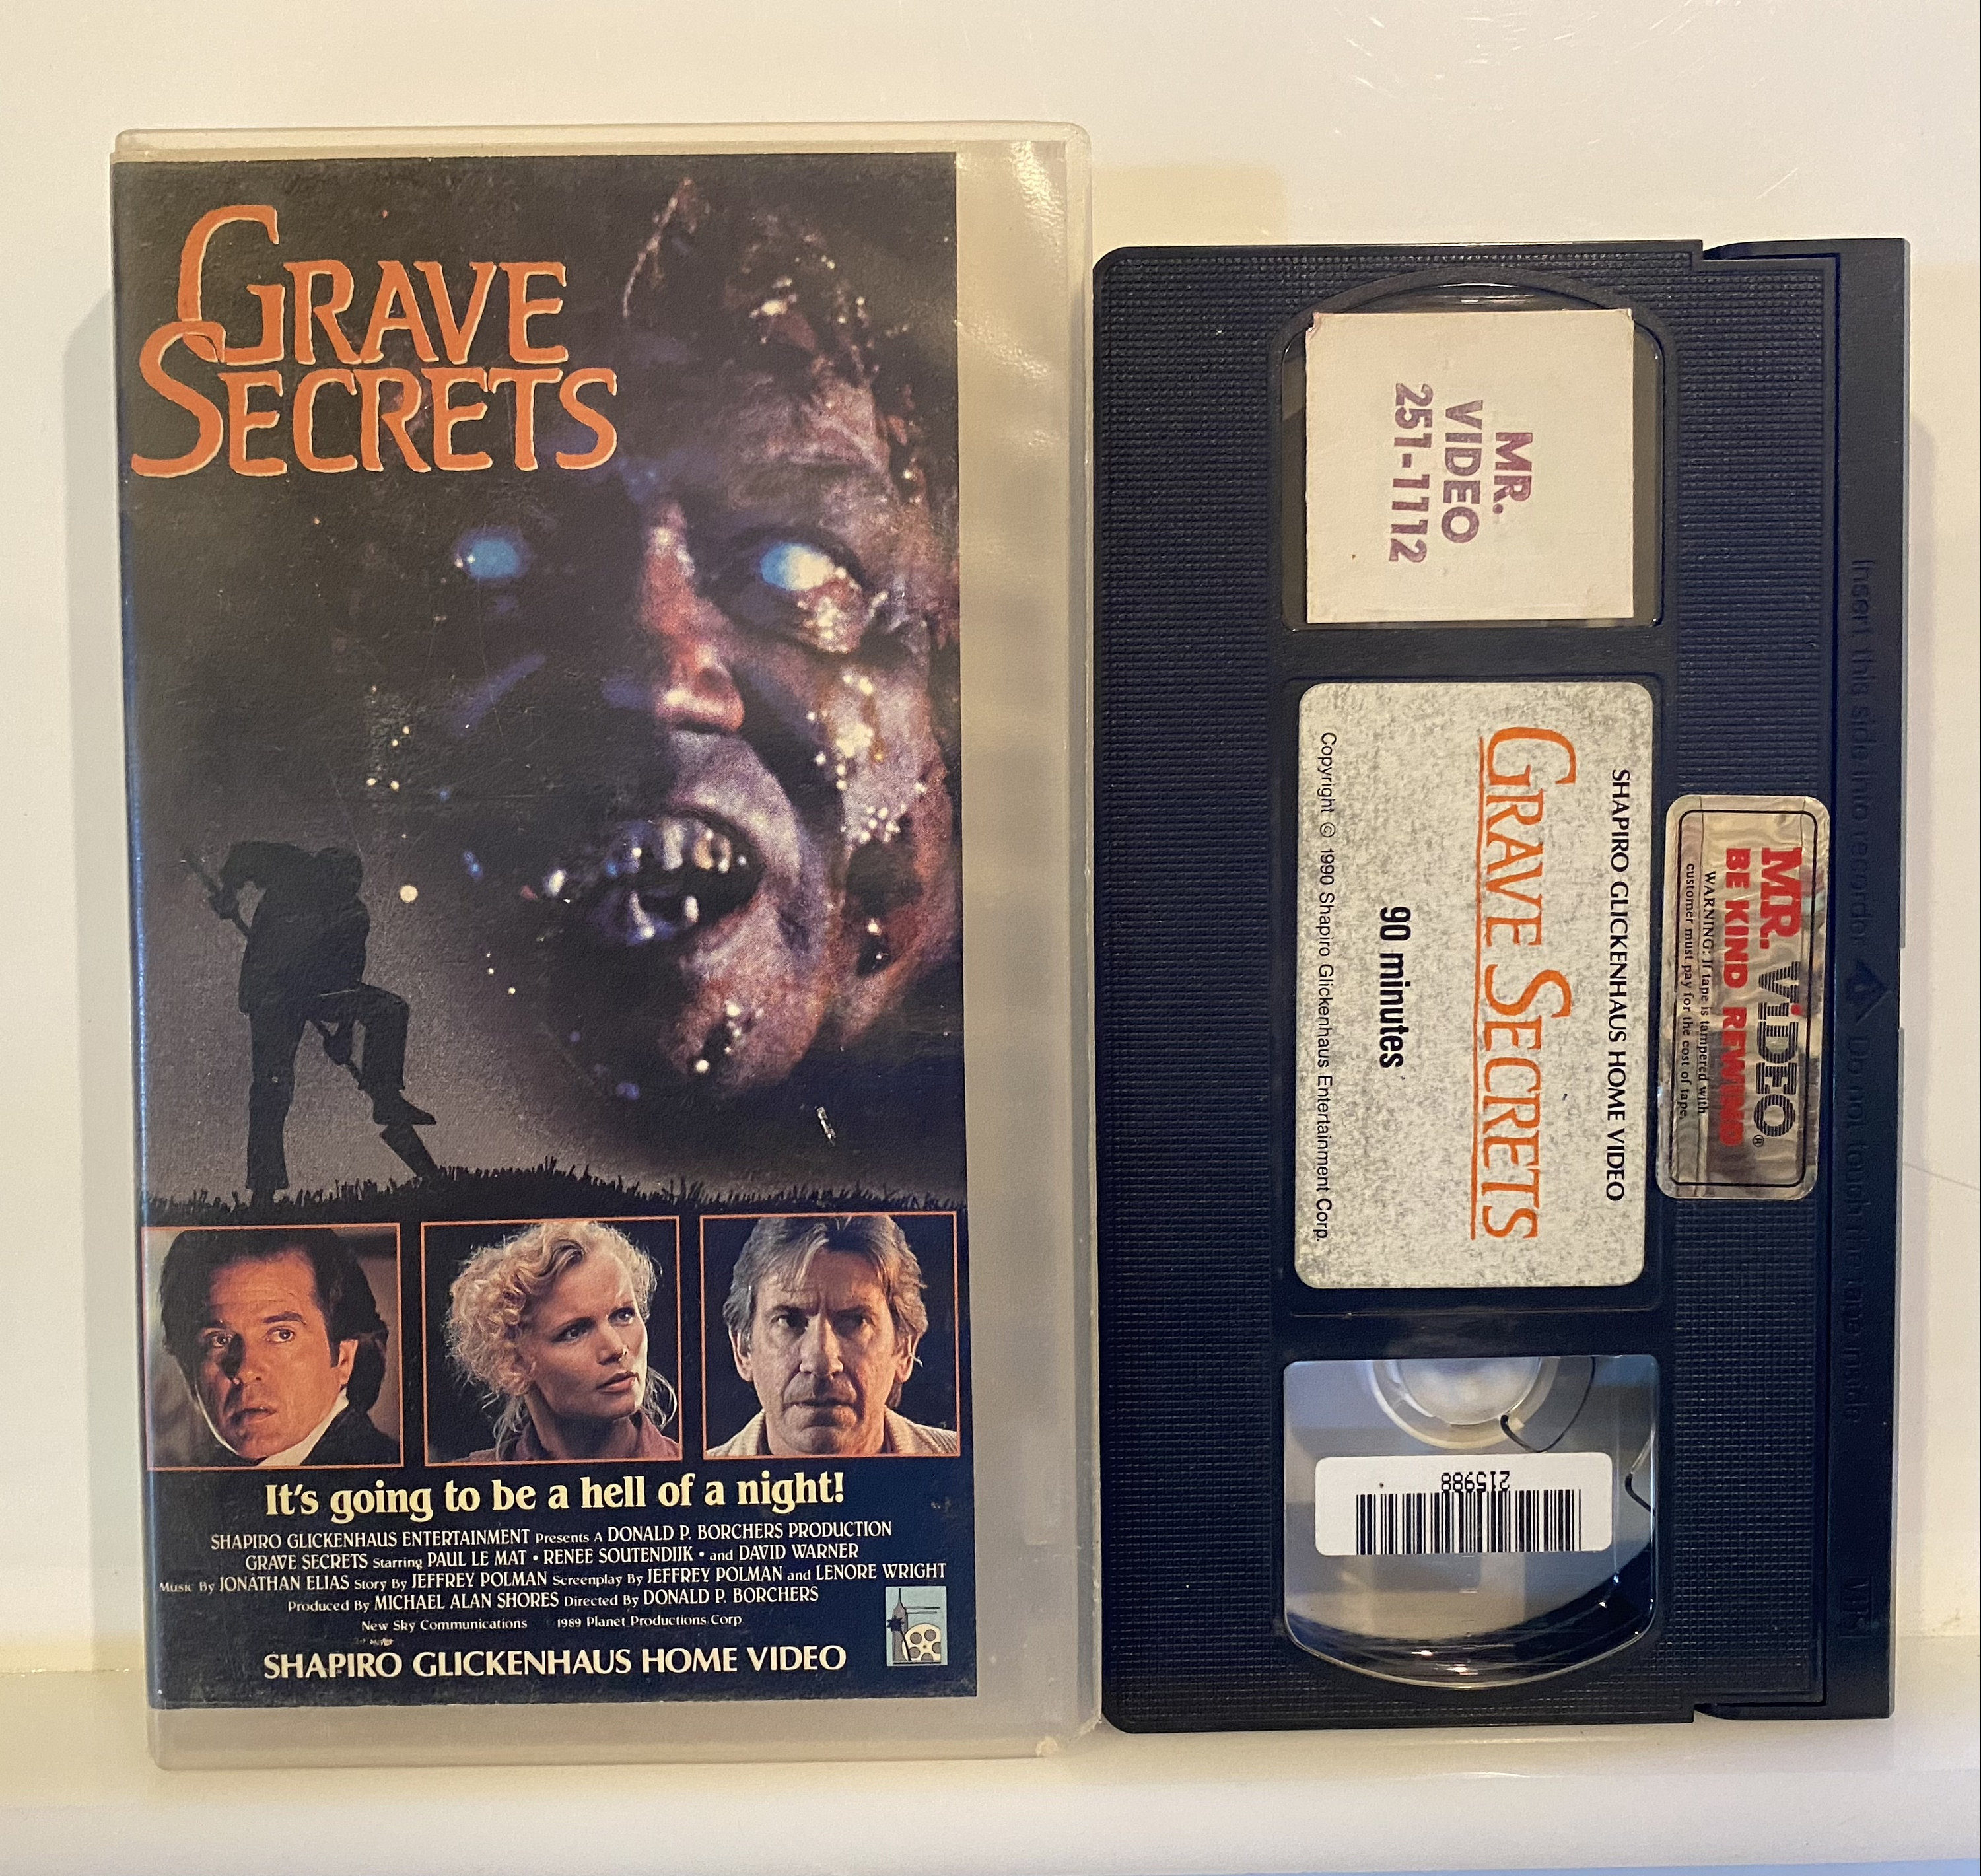 Grave Secrets 1989 Vintage VHS Movie Cassette Tape picture